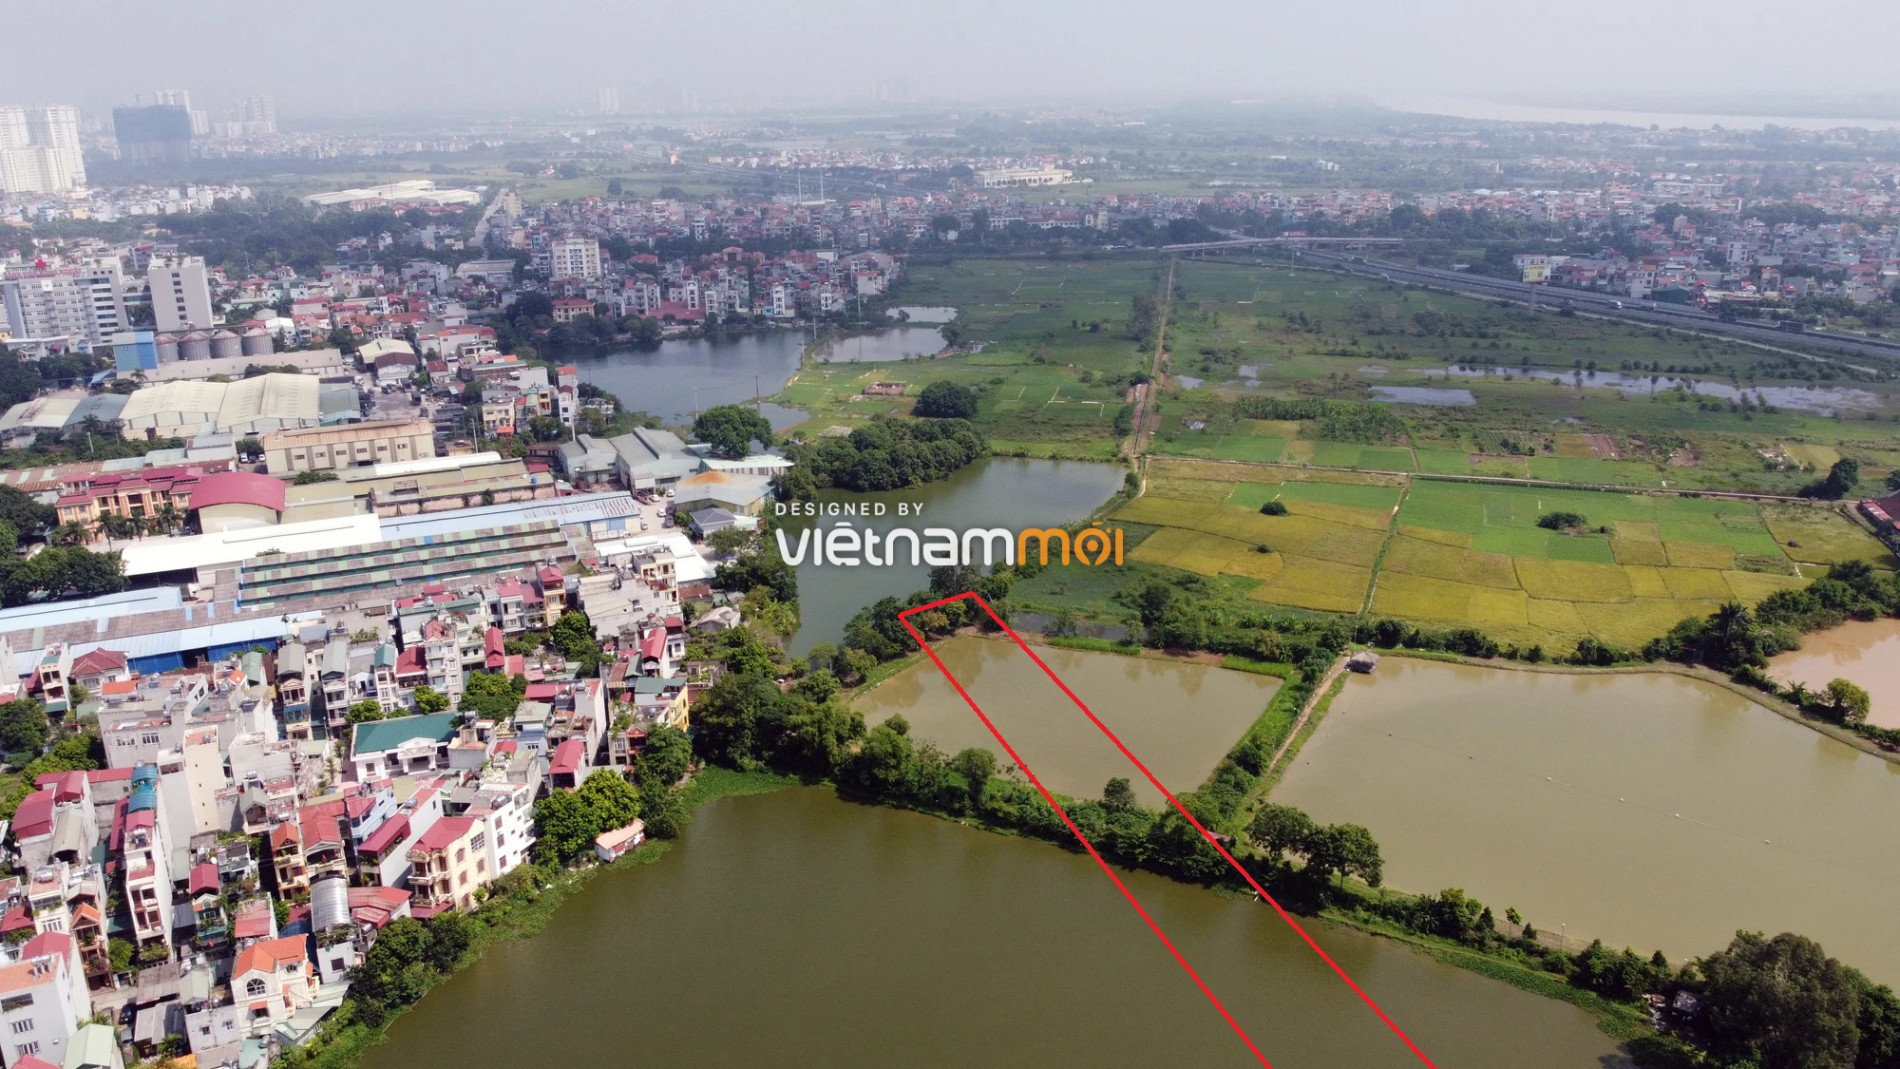  Những khu đất sắp thu hồi để mở đường ở xã Liên Ninh, Thanh Trì, Hà Nội (phần 6) - Ảnh 4.